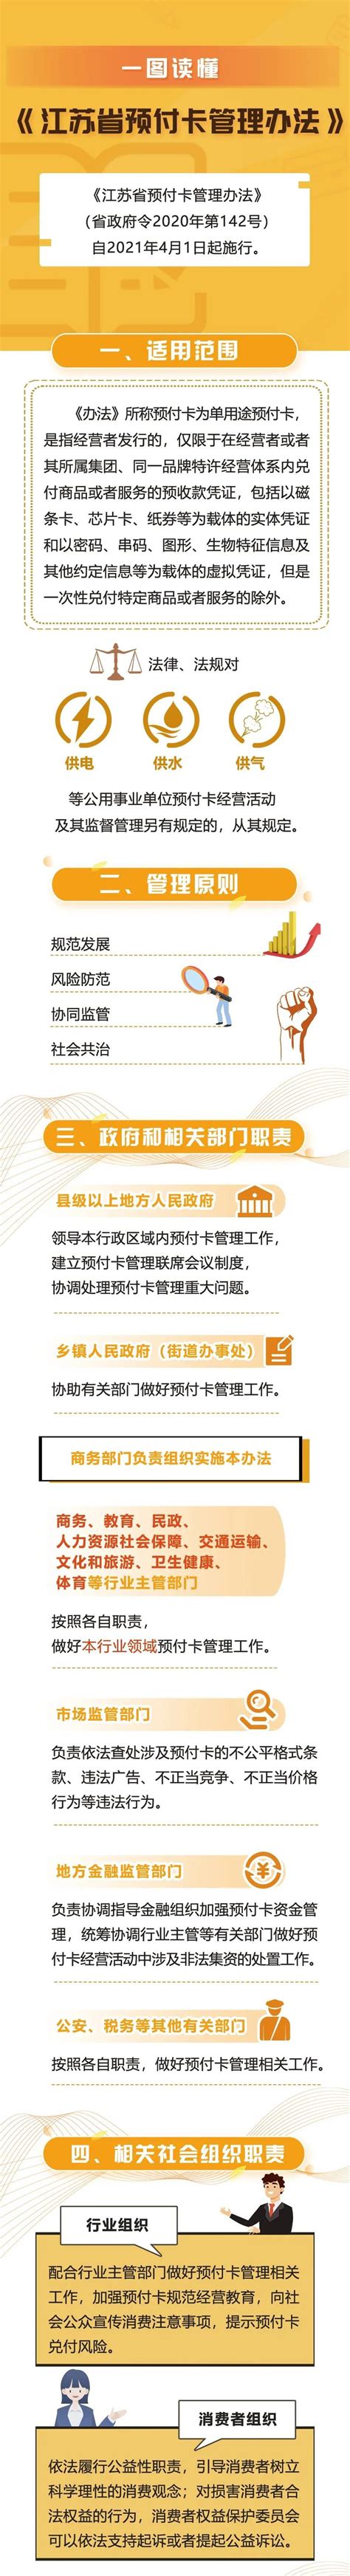 【江苏省预付卡管理办法】- 相城区惠企通服务平台